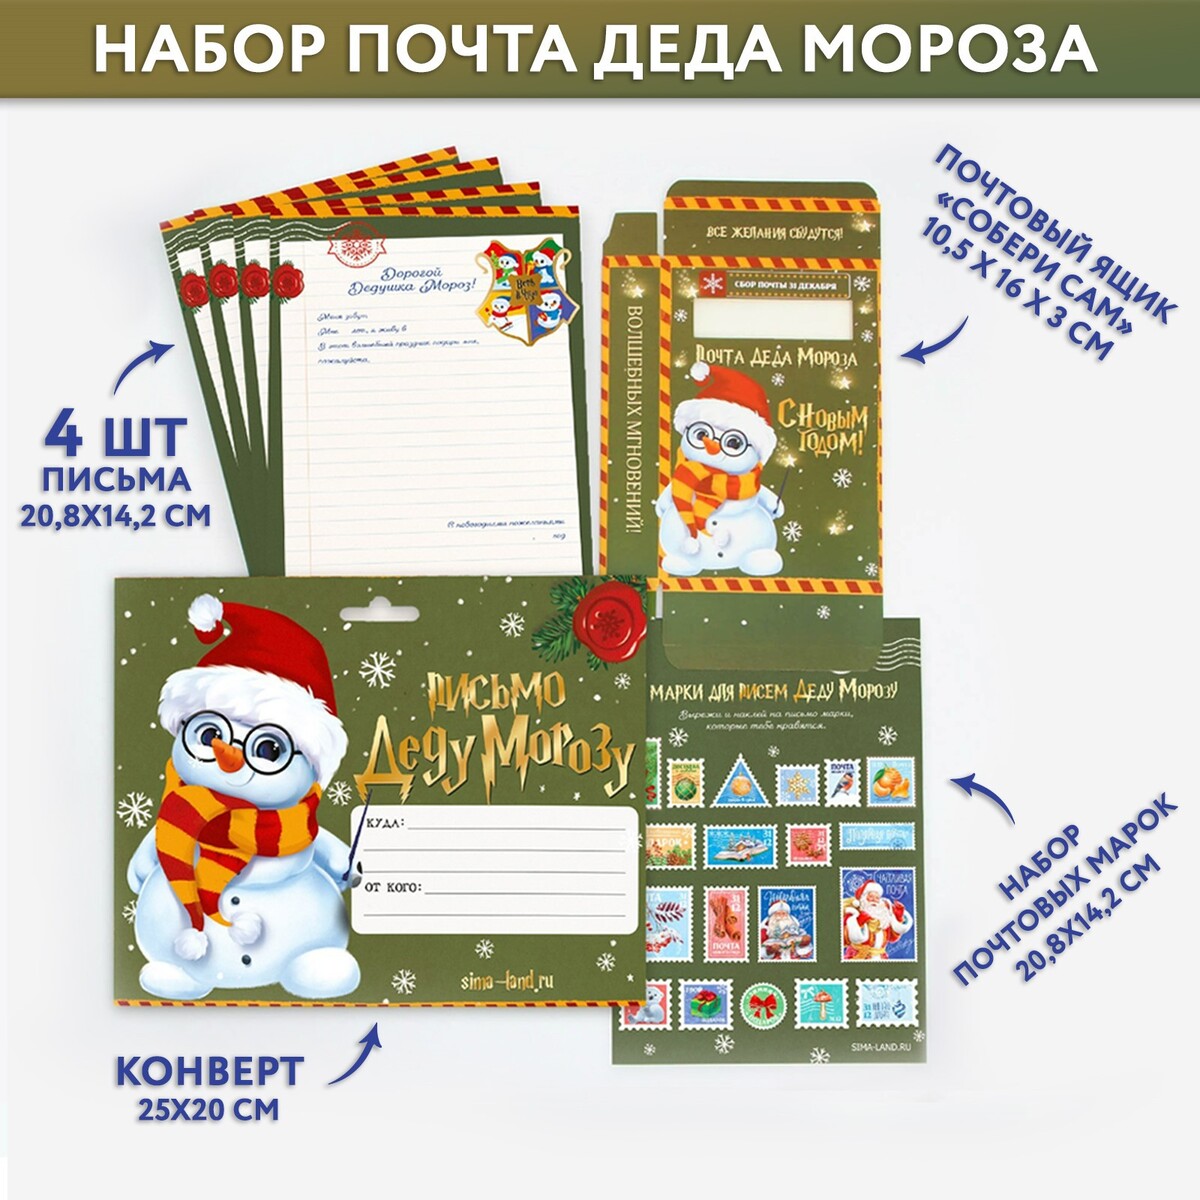 Набор почта деда мороза: почтовый ящик, письма (4шт.), марки набор для опытов 2в1 химическая грелка и прикосновение мороза новый год в пакете